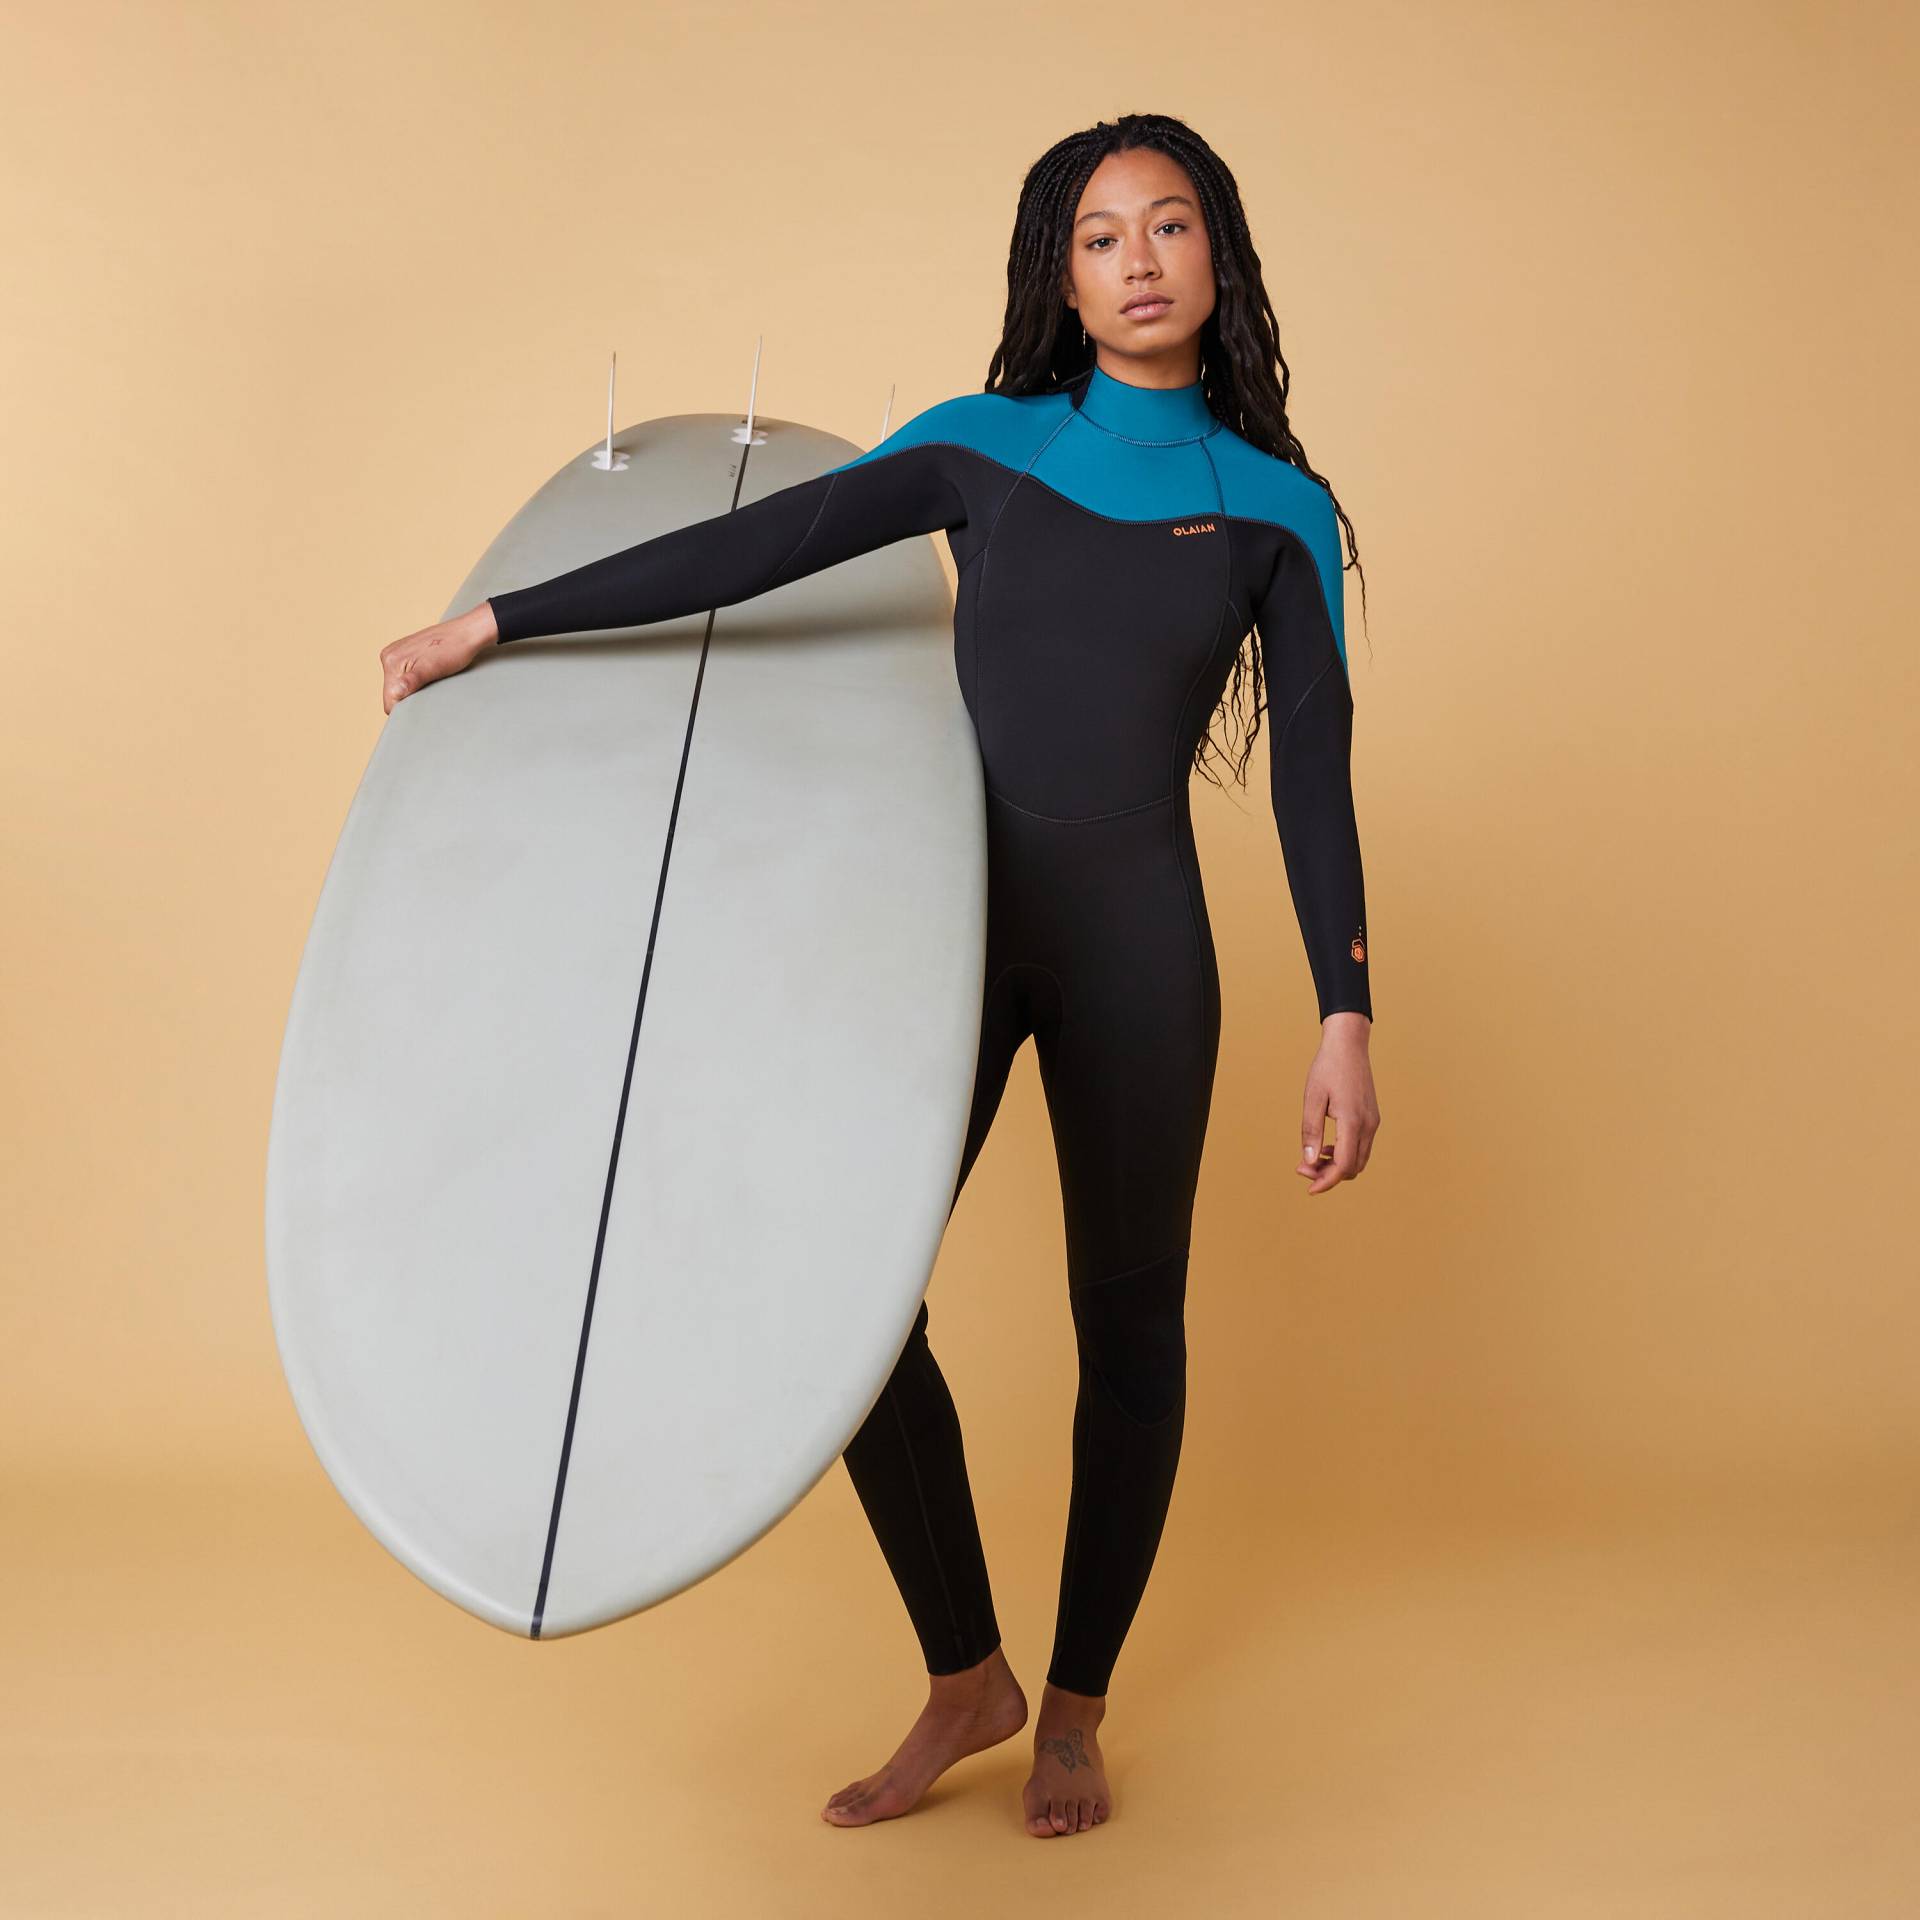 Neoprenanzug Surfen Damen 4/3 Rückenreissverschluss - 500 schwarz/grün von OLAIAN